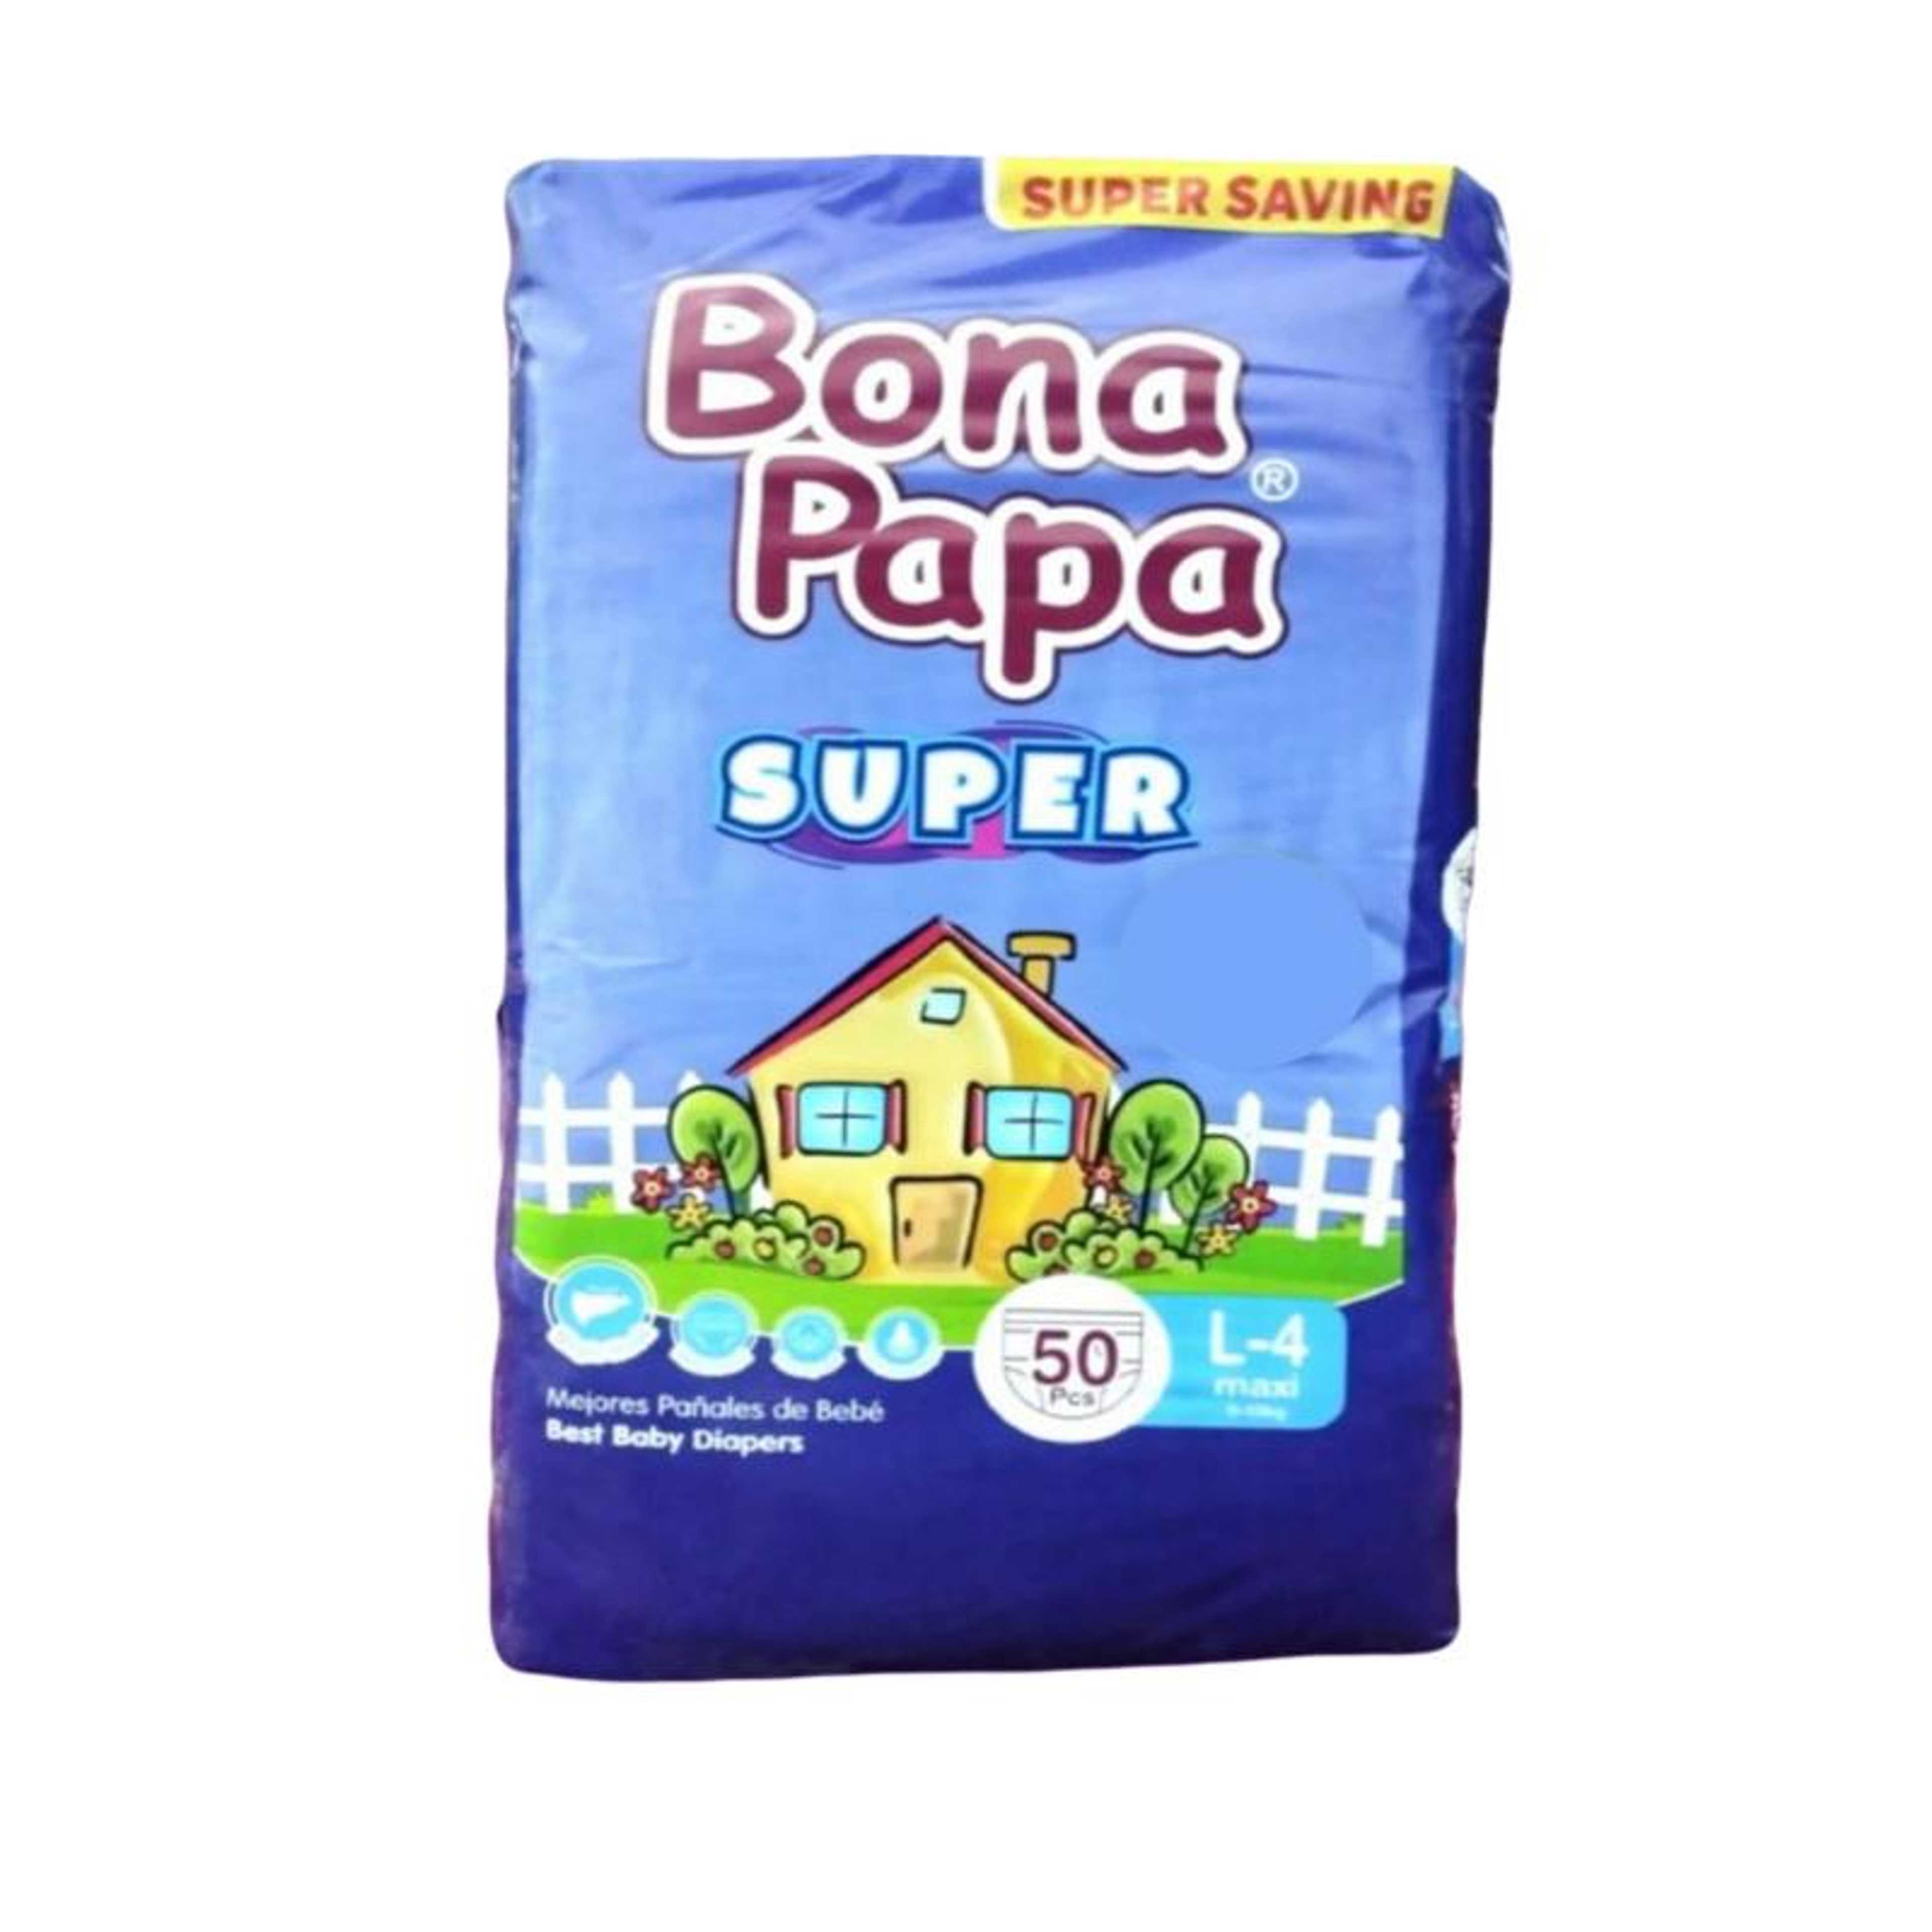 Bona Papa SUPER Diaper Large - 50pcs Pack